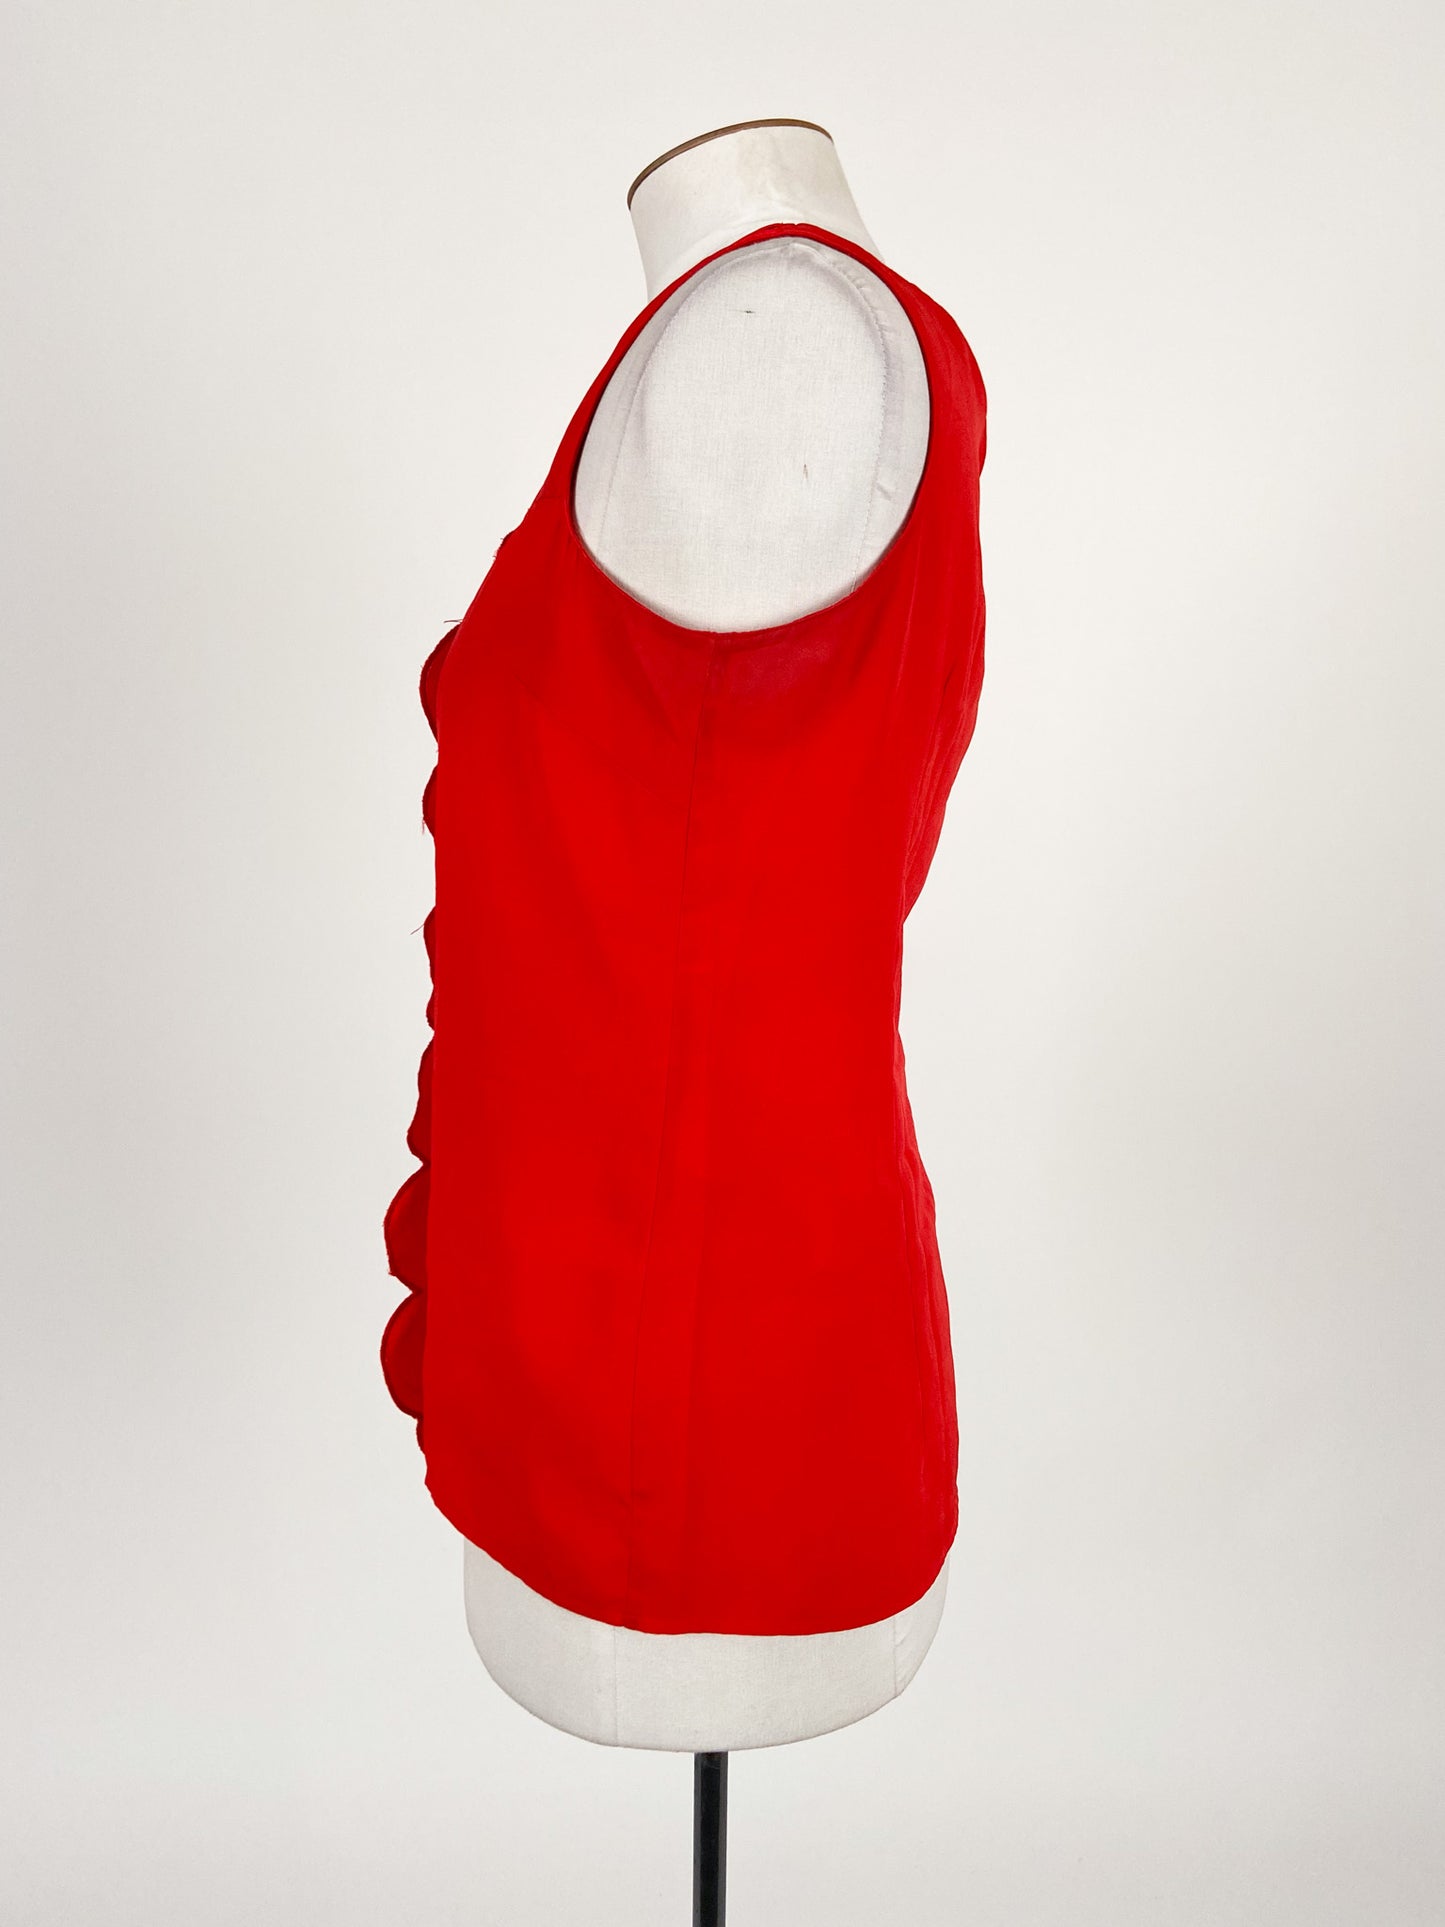 Karen Walker | Red Workwear Top | Size 10